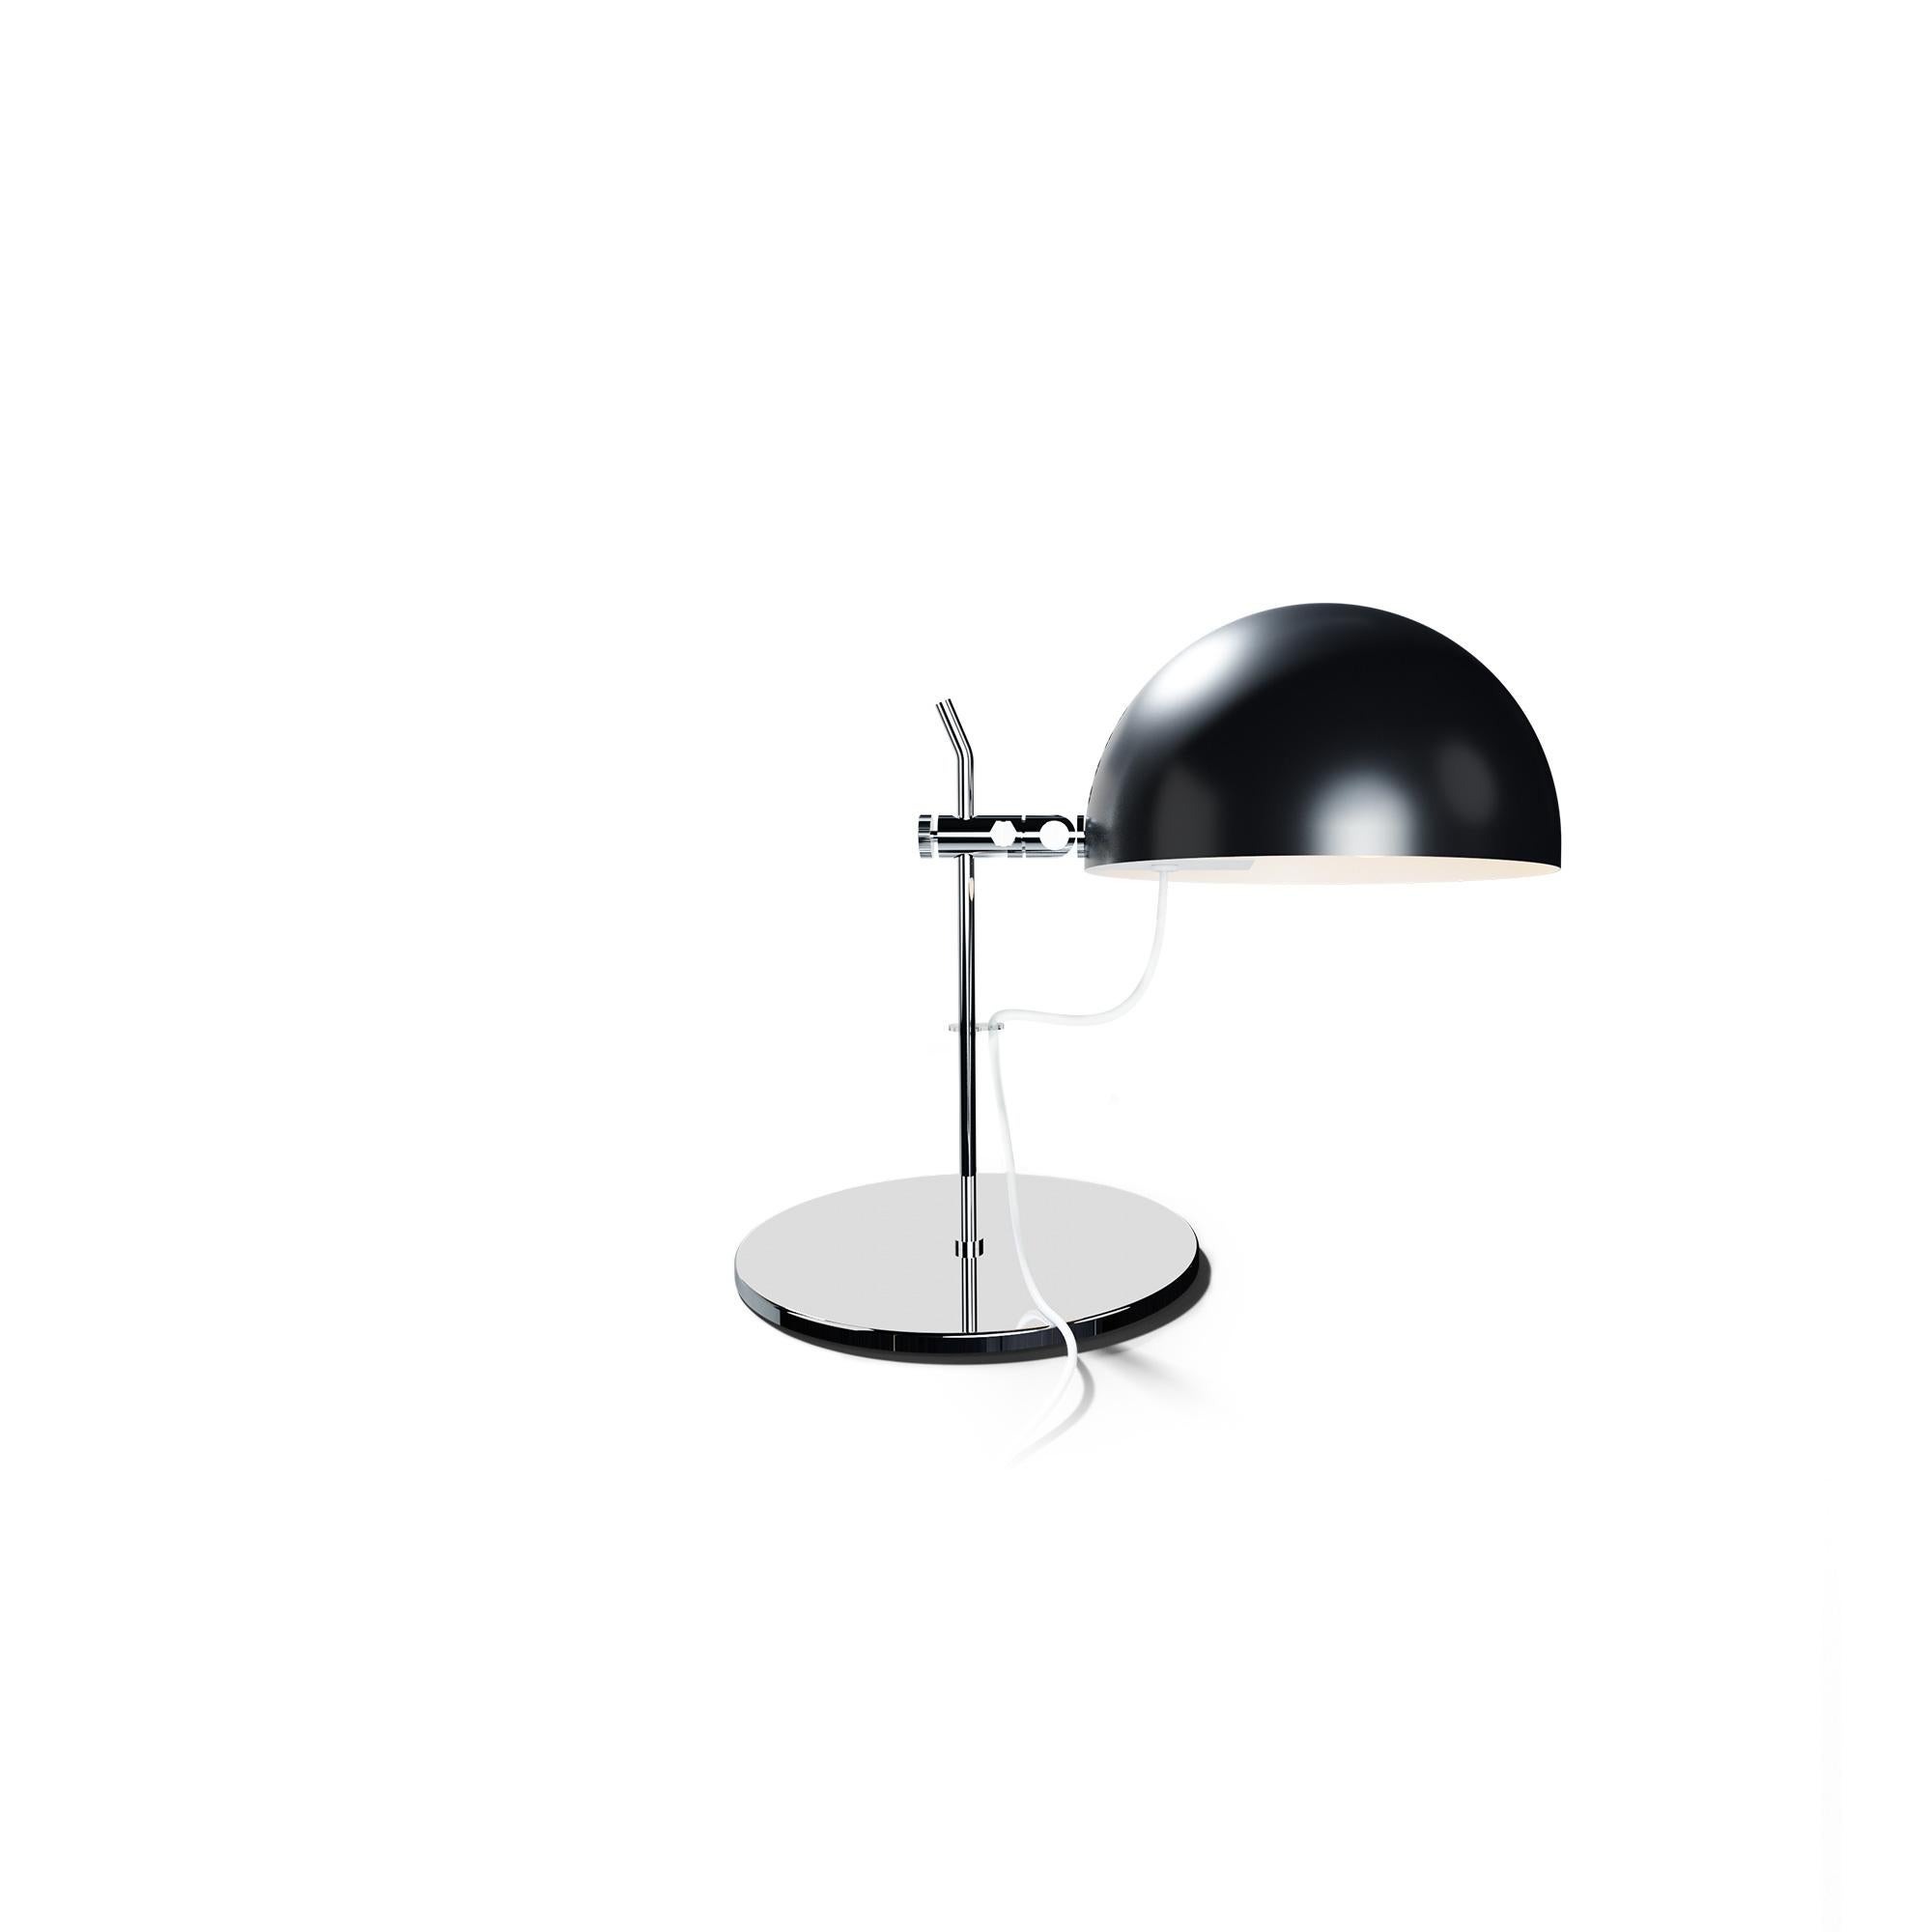 Alain Richard 'A22f' Task Lamp in Chrome for Disderot For Sale 7